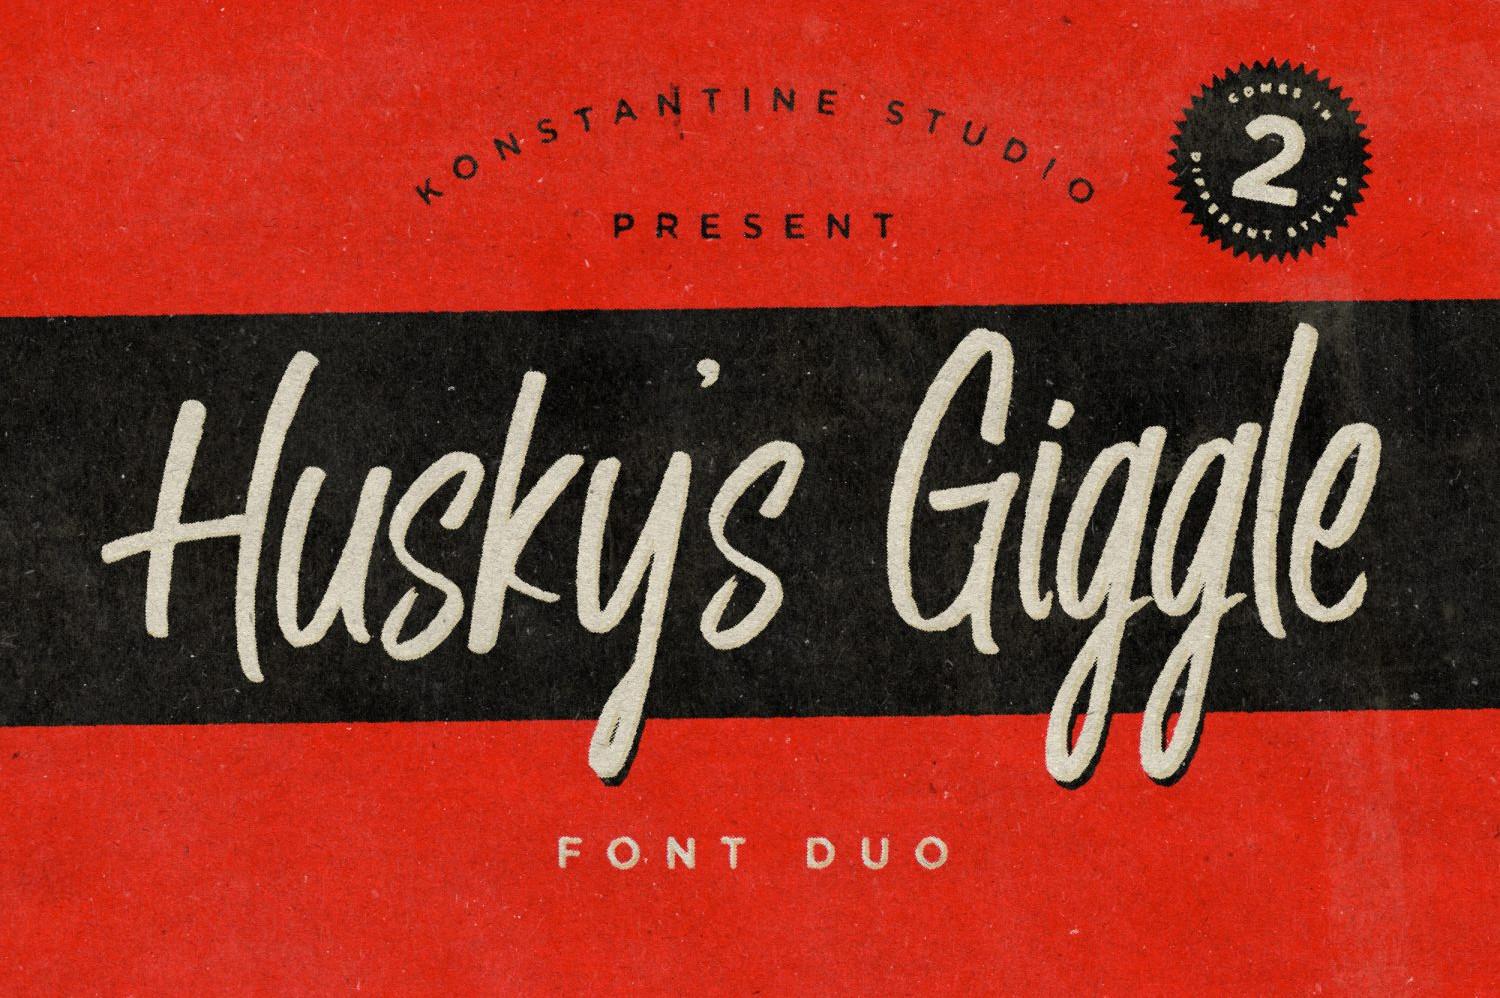 Husky's Giggle Font